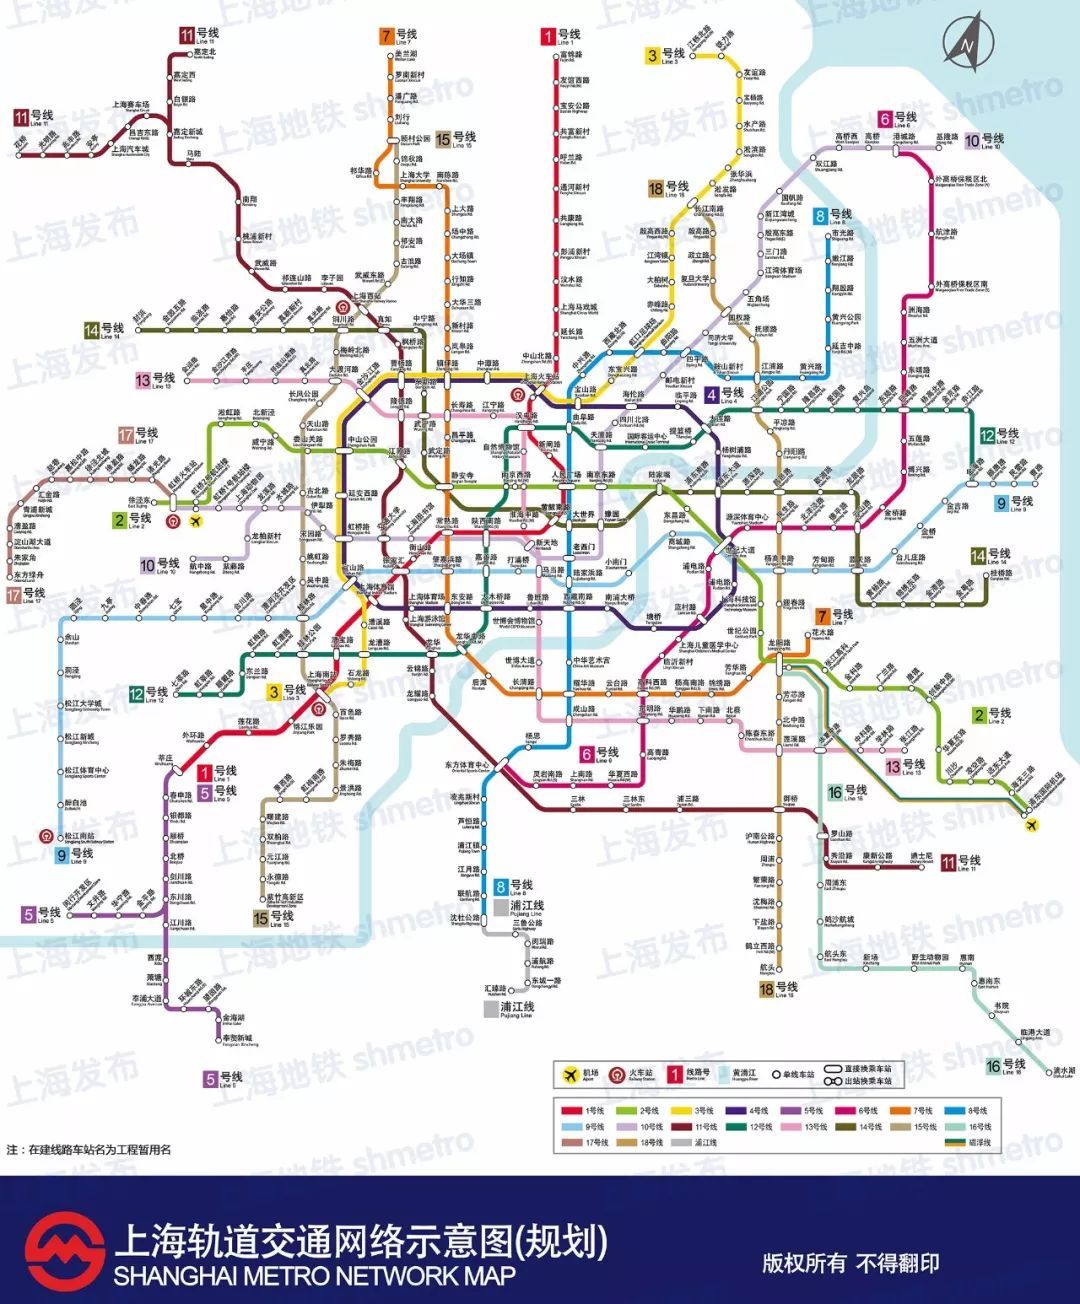 重磅!2017-2035上海地铁最新规划图公布